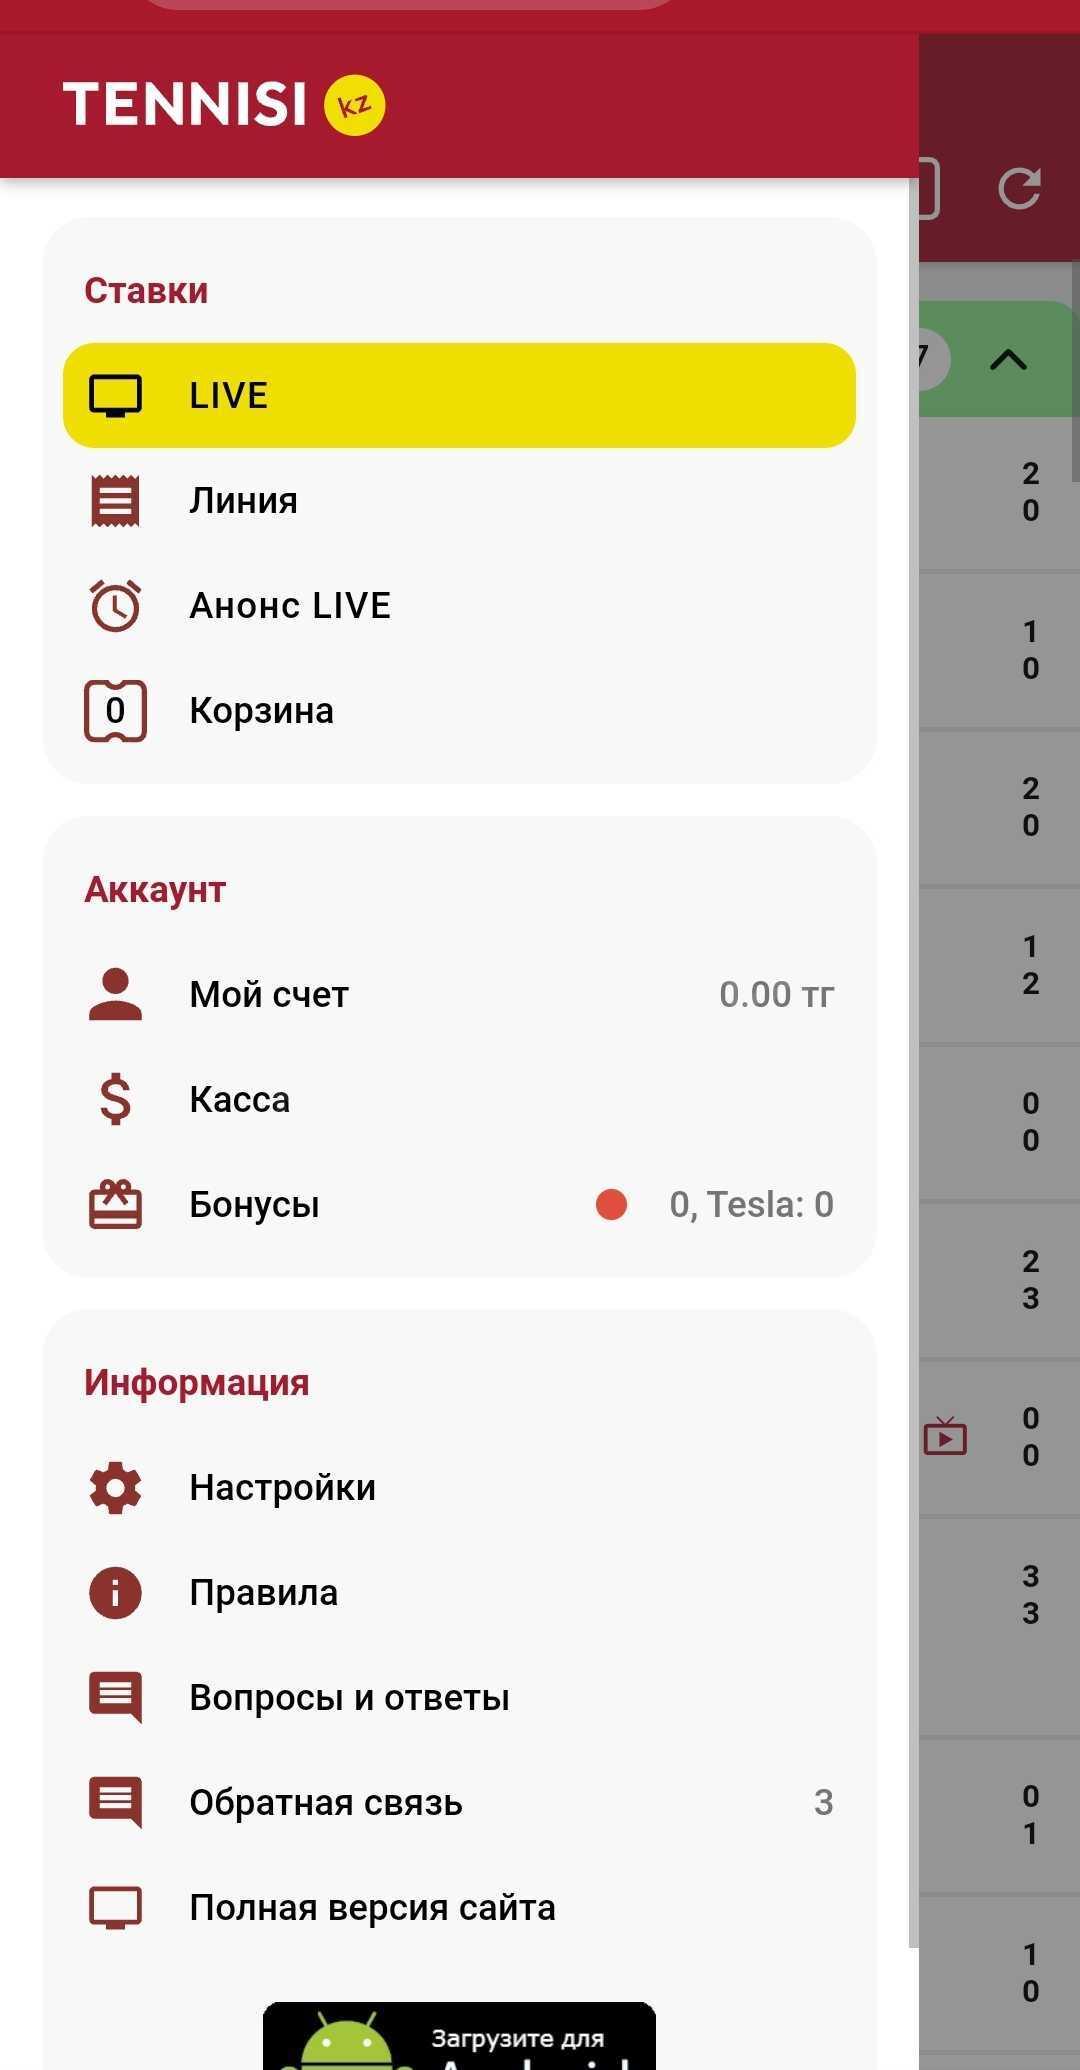 Кабинет пользователя в приложении и мобильной версии сайта